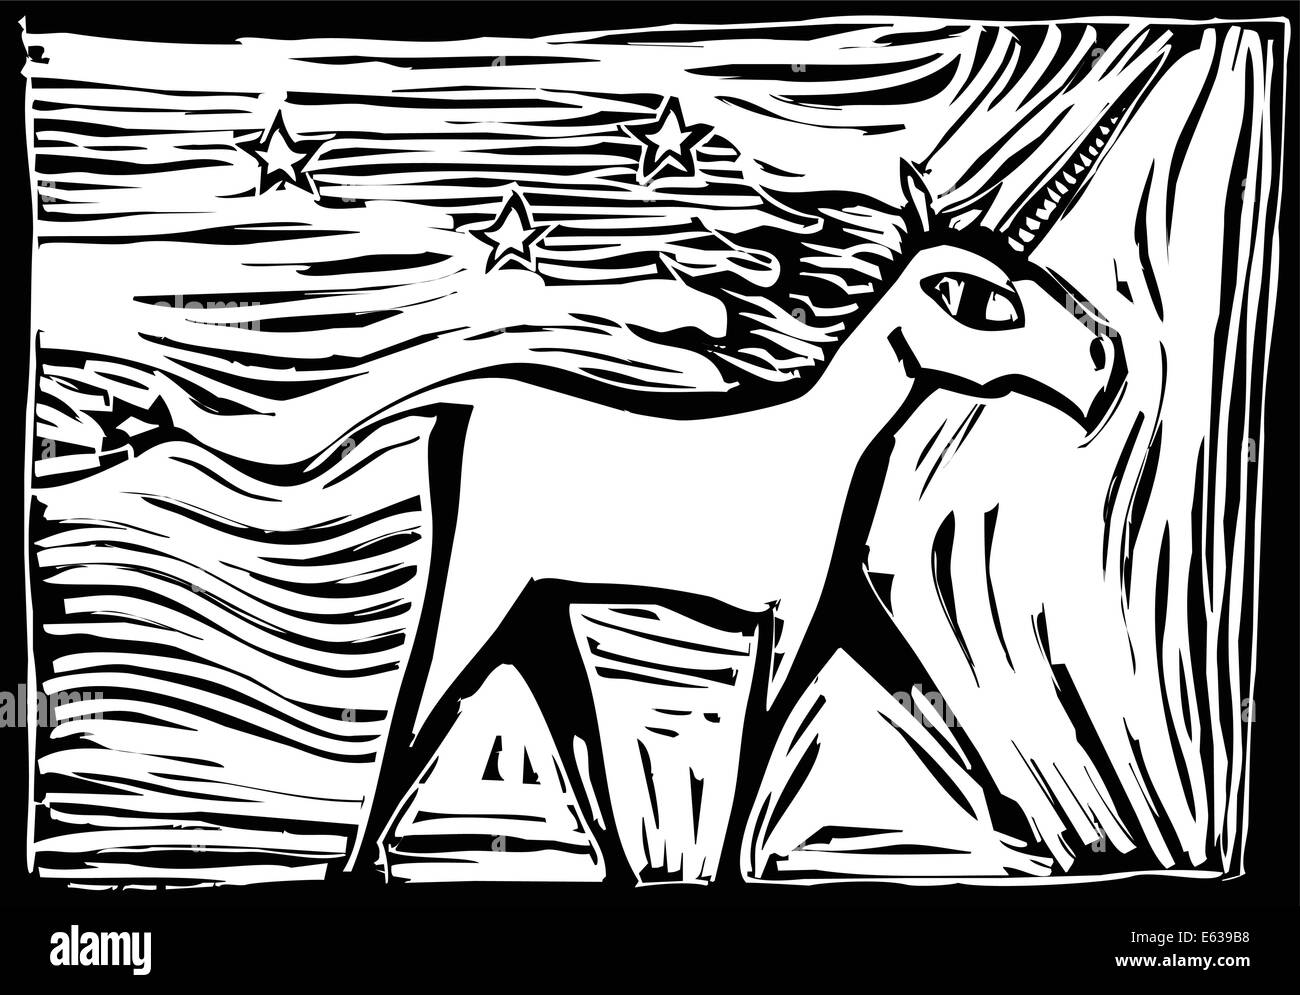 Holzschnitt-Bild eines mythischen Einhorn laufenden Stock Vektor